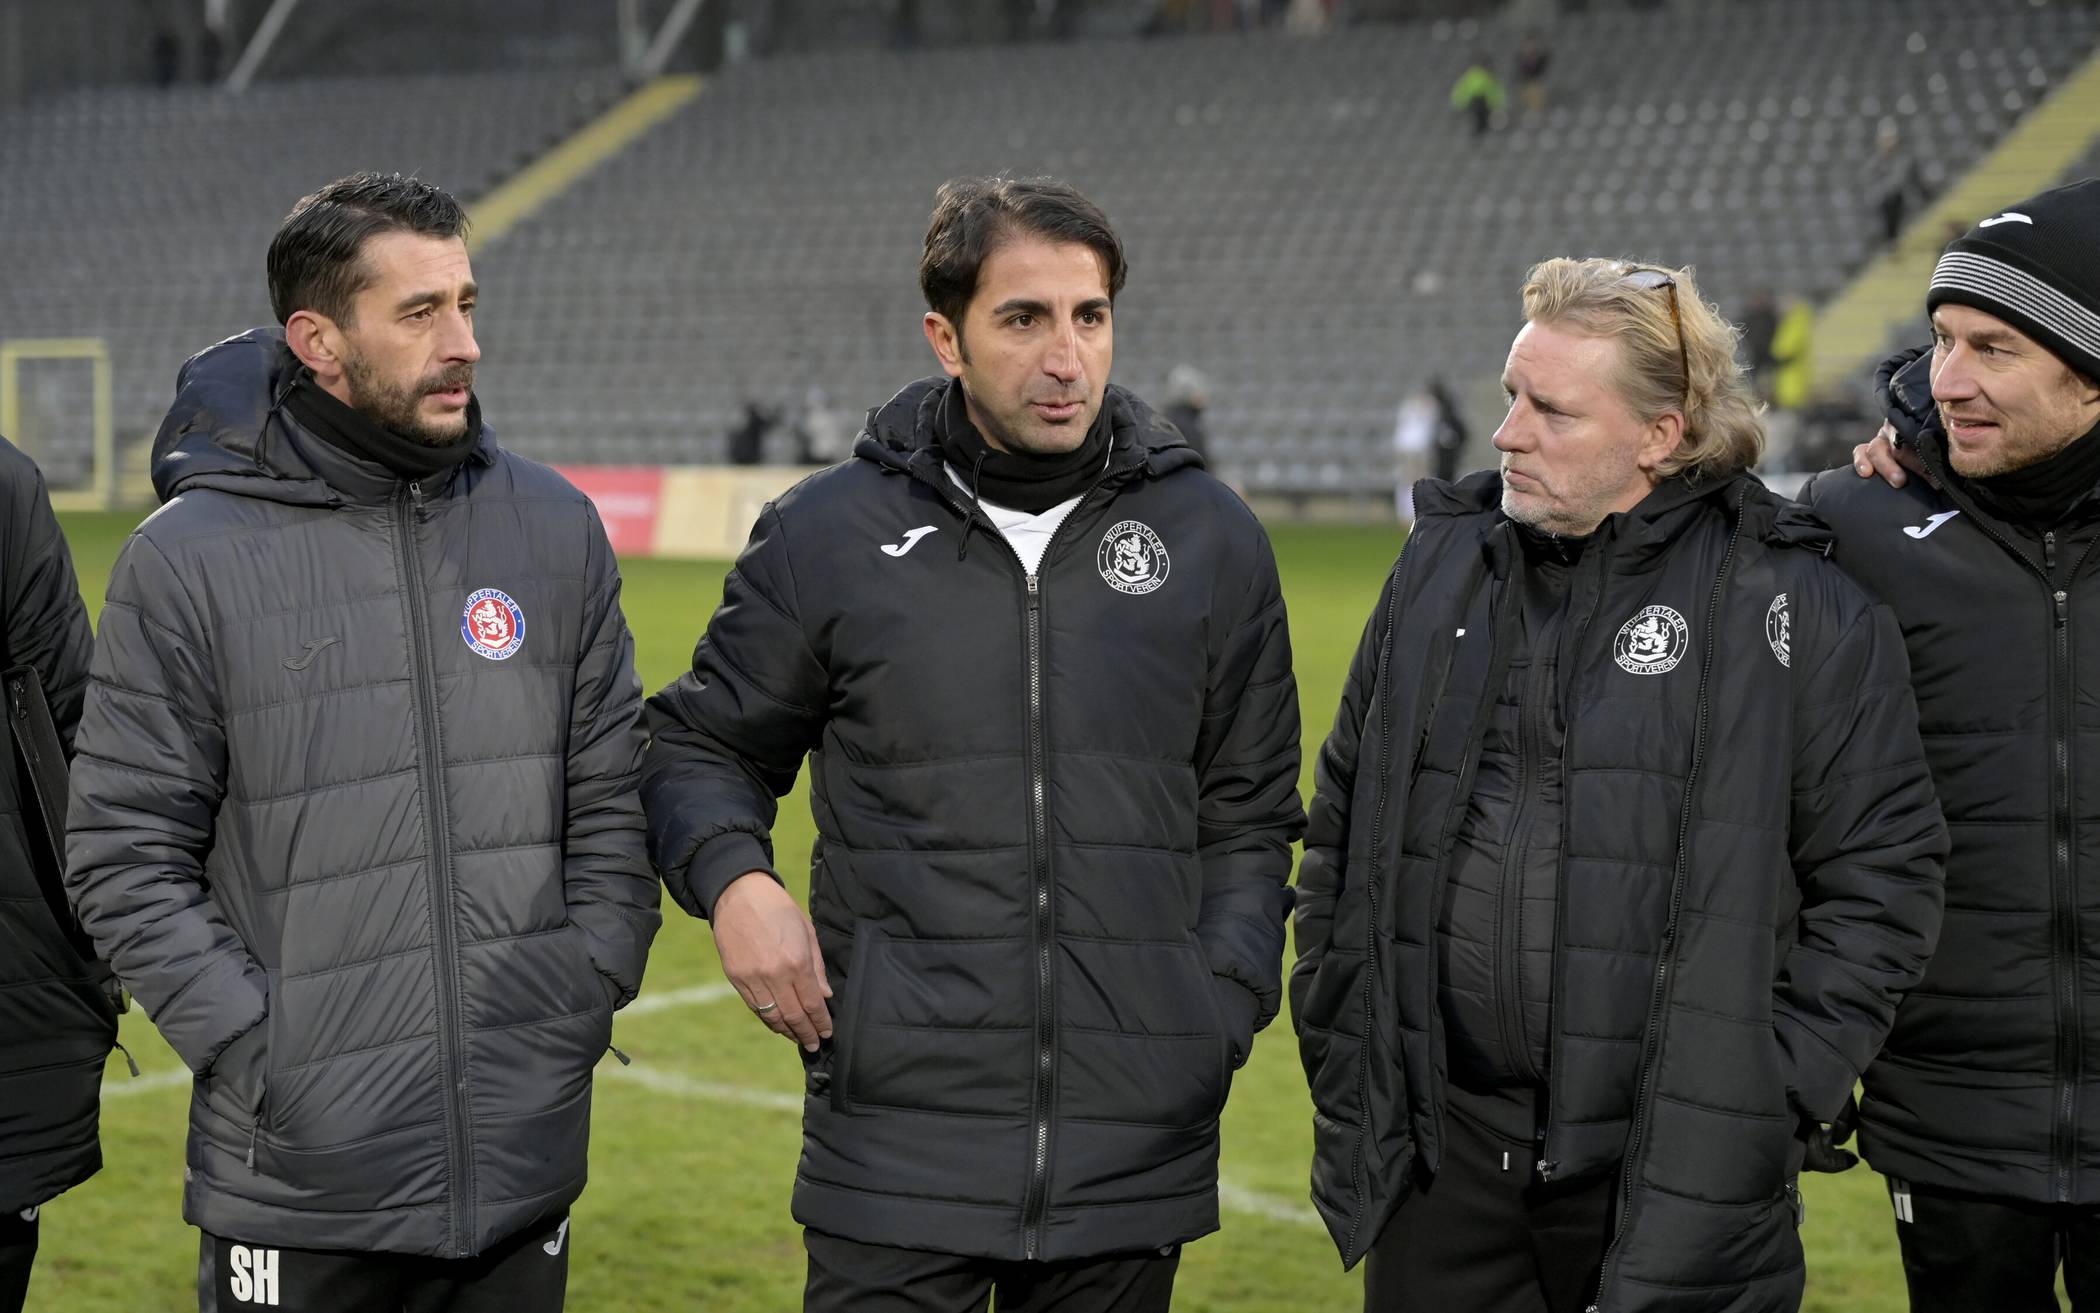  Von li.: Co-Trainer Samir El Hajjaj, Chefcoach Hüzeyfe Dogan und der Sportliche Leiter Stephan Küsters. 